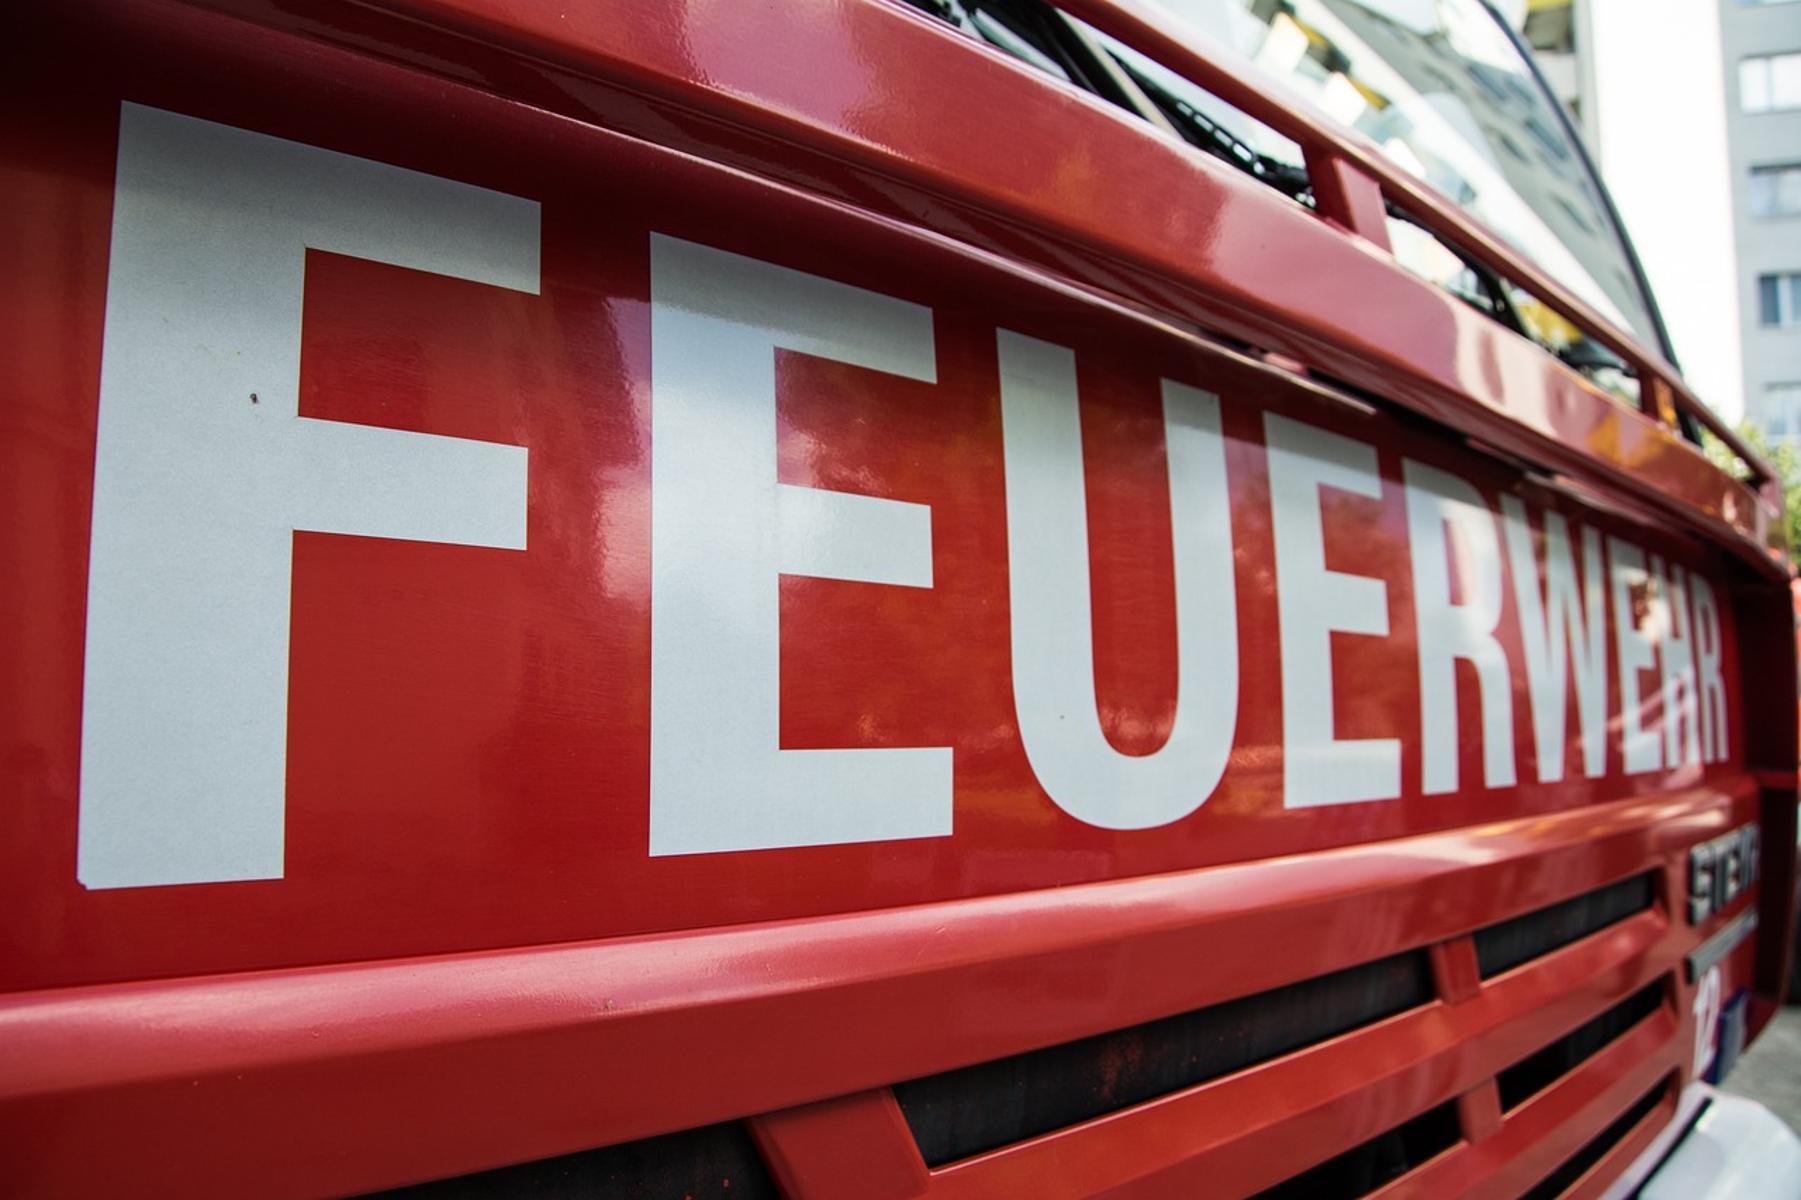 MAI-FIRE heißt die Mai-Feier der Freiwilligen Feuerwehr in Eppertshausen. Sie findet am 30. April in der Bürgerhalle Eppertshausen statt.